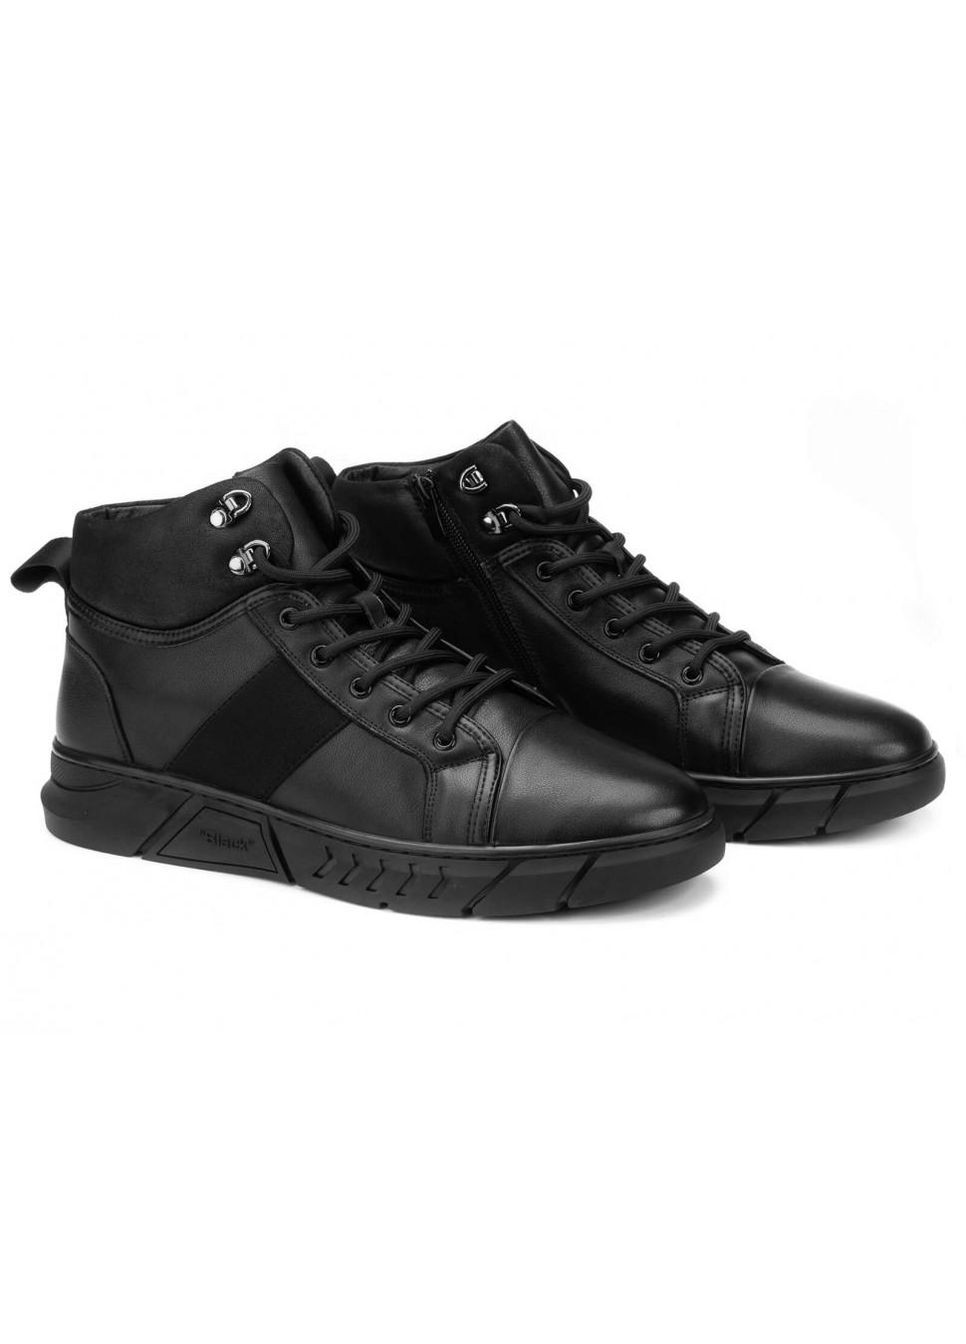 Черные зимние ботинки 7214313-б цвет черный Clemento